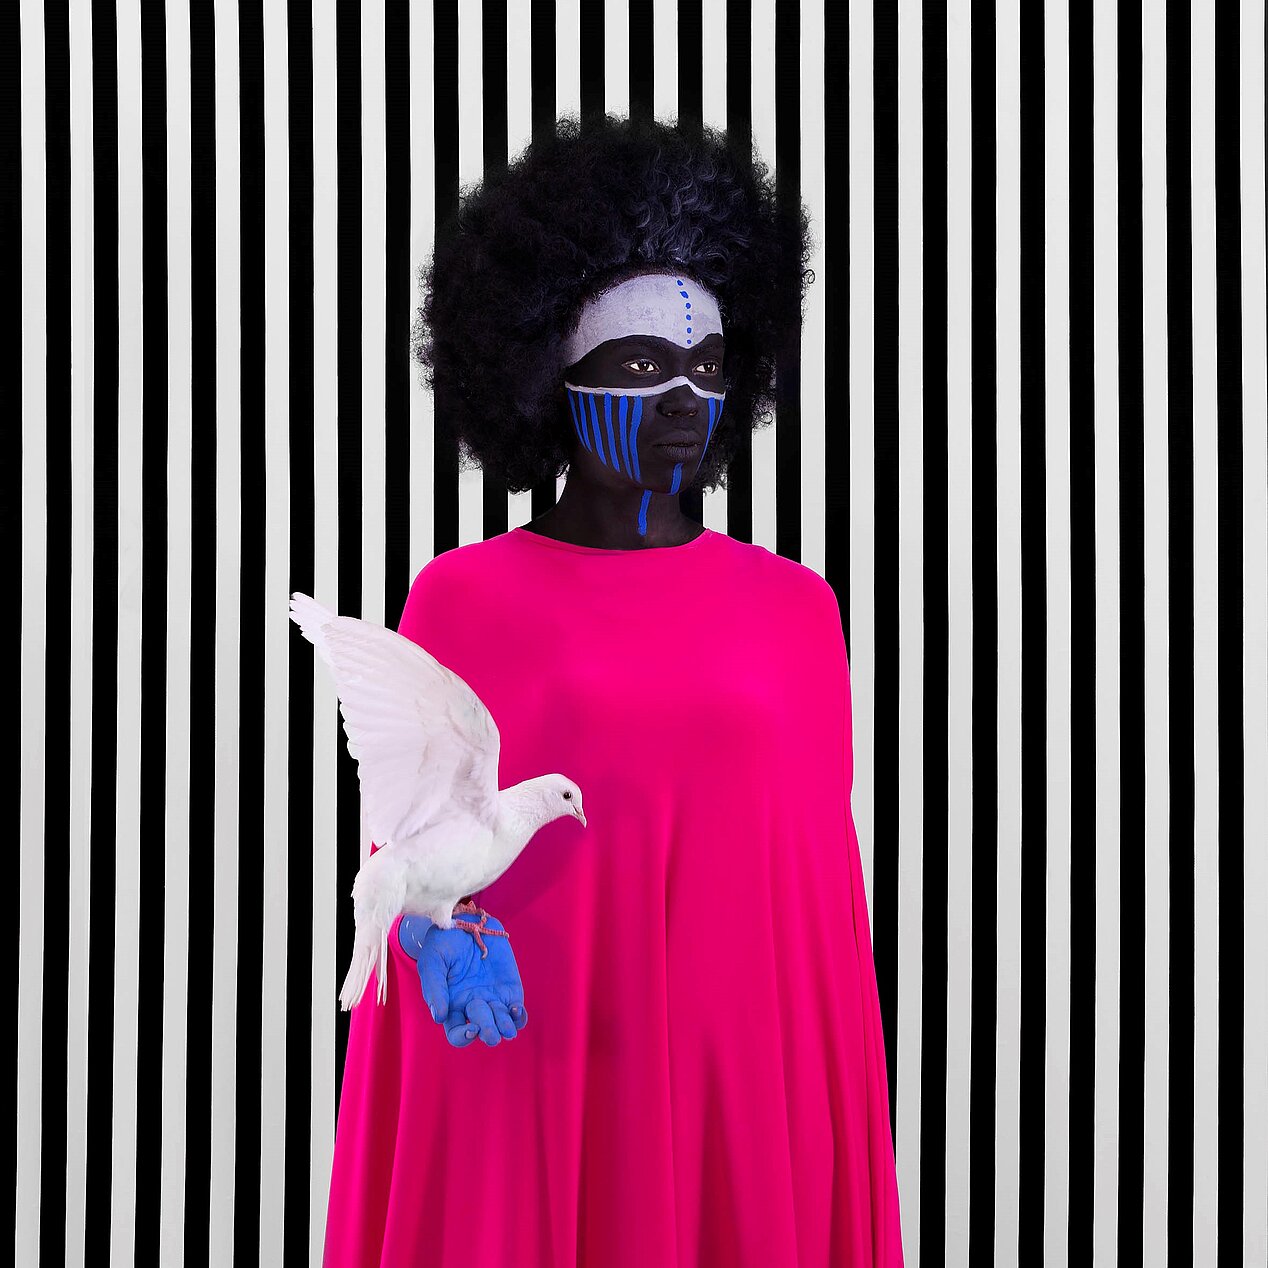 Auf dem Bild ist die Künstlerin Aïda Muluneh in einem pinken Kleid zu sehen. Ihr Gesicht ist weiß und blau bemalt, ihre rechte Hand ist blau bemalt. Auf ihrer rechten Hand sitzt eine Taube. Der Hintergrund hat schwarz-weiße Streifen.